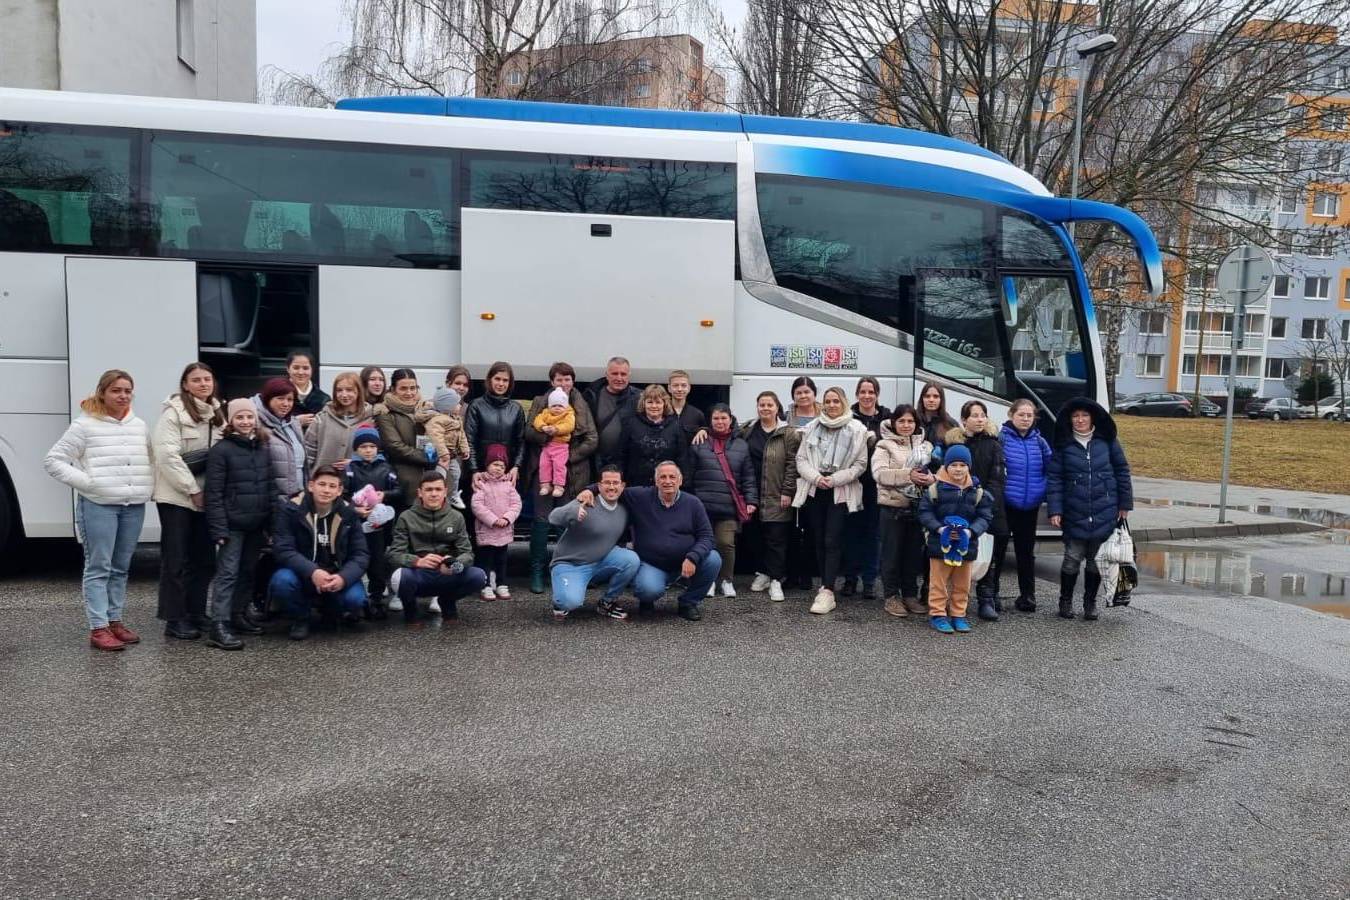 TheBus Ontime, servicio de transporte de viajeros, se solidariza con los refugiados ucranianos